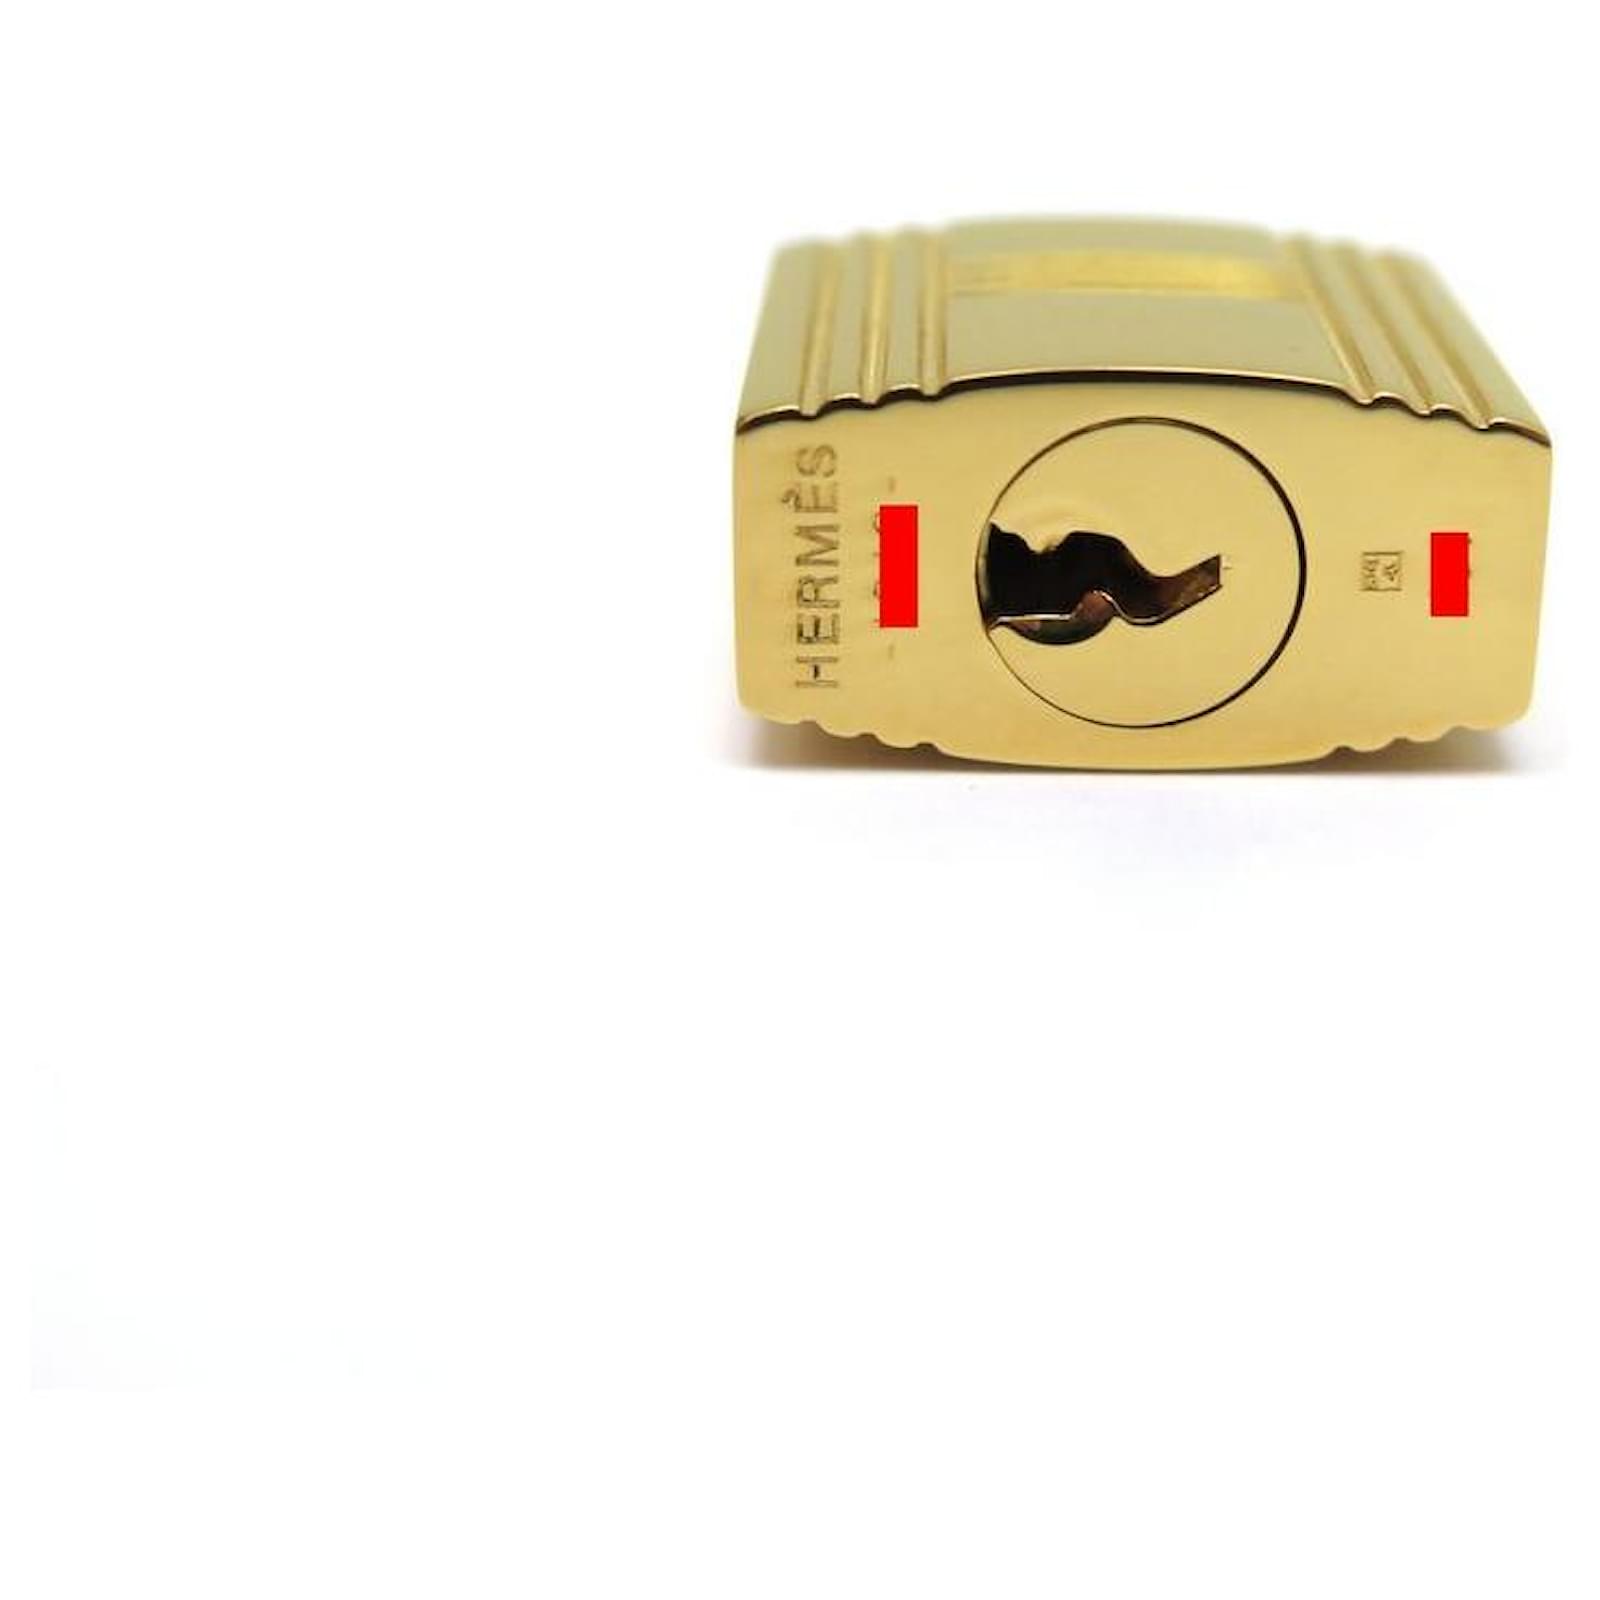 Hermès golden padlock for Birkin Kelly or Bolide bag